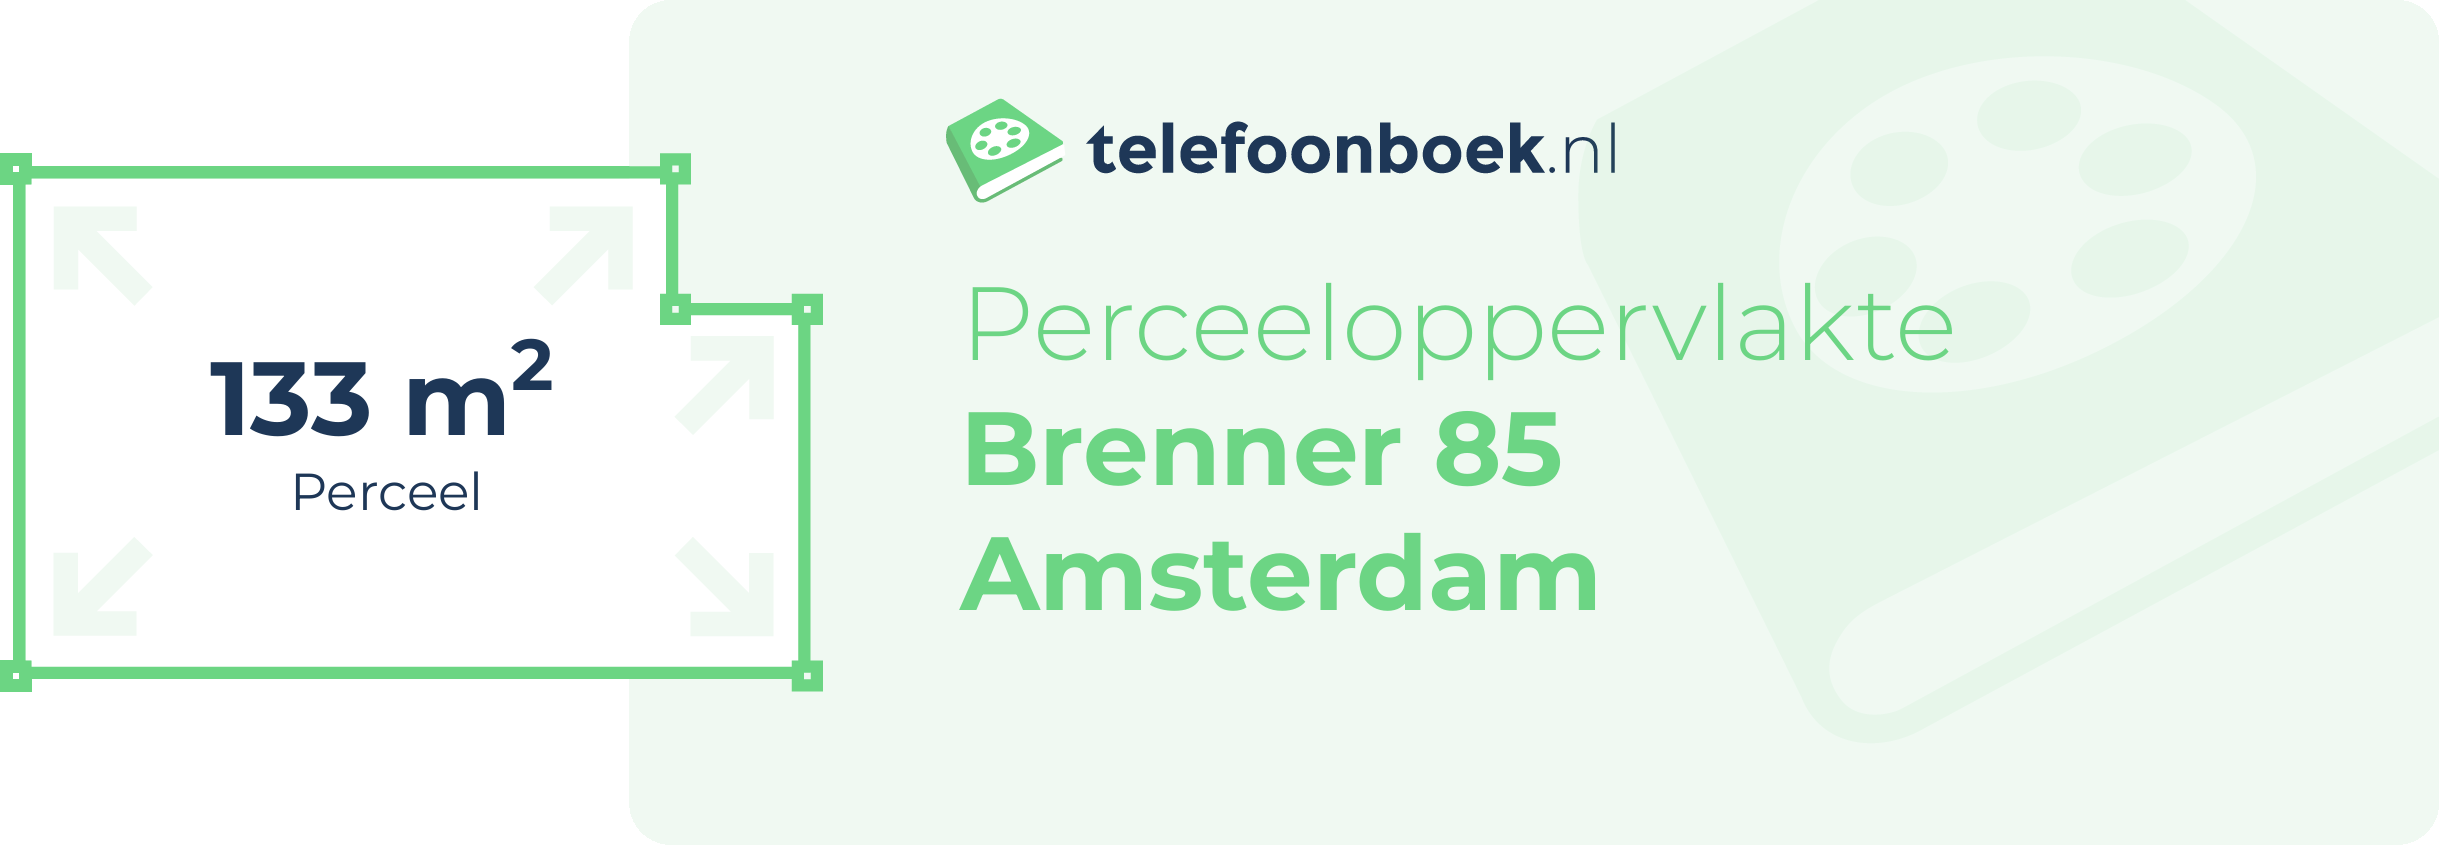 Perceeloppervlakte Brenner 85 Amsterdam